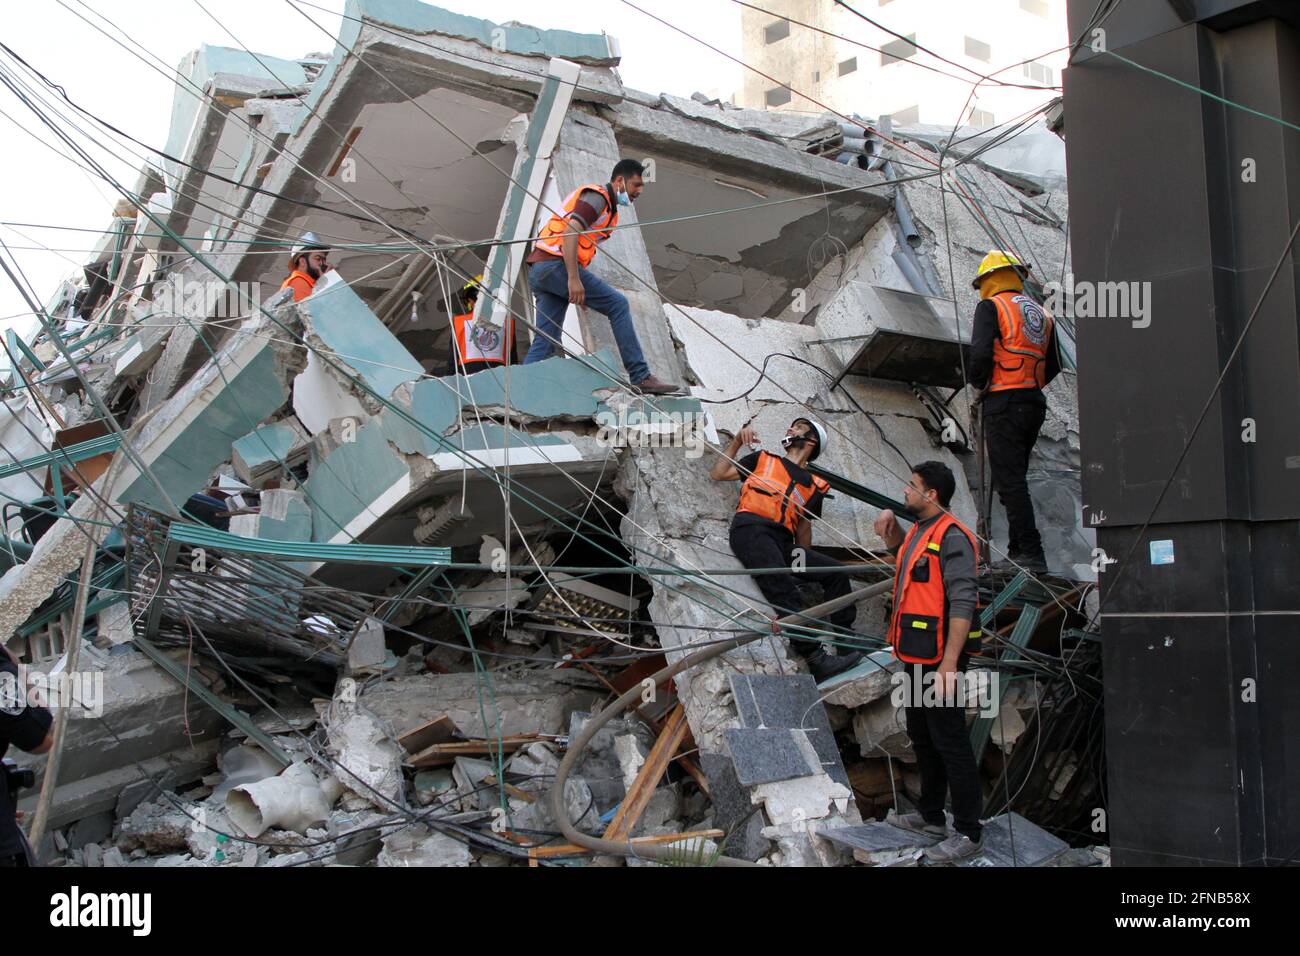 Gaza-Stadt, israelischer Luftangriff in Gaza-Stadt. Mai 2021. Retter überprüfen die Trümmer des Jala-Turms, der Büros von Al-Jazeera TV und Associated Press sowie Wohnwohnungen beherbergte, nachdem er am 15. Mai 2021 von einem israelischen Luftangriff in Gaza-Stadt getroffen wurde. Israel sagte am Samstag, dass es das Hochhaus in Gaza-Stadt, in dem internationale Medien untergebracht sind, getroffen habe, weil es Vermögenswerte des Hamas-Geheimdienstes enthielt. Kredit: Rizek Abdeljawad/Xinhua/Alamy Live Nachrichten Stockfoto